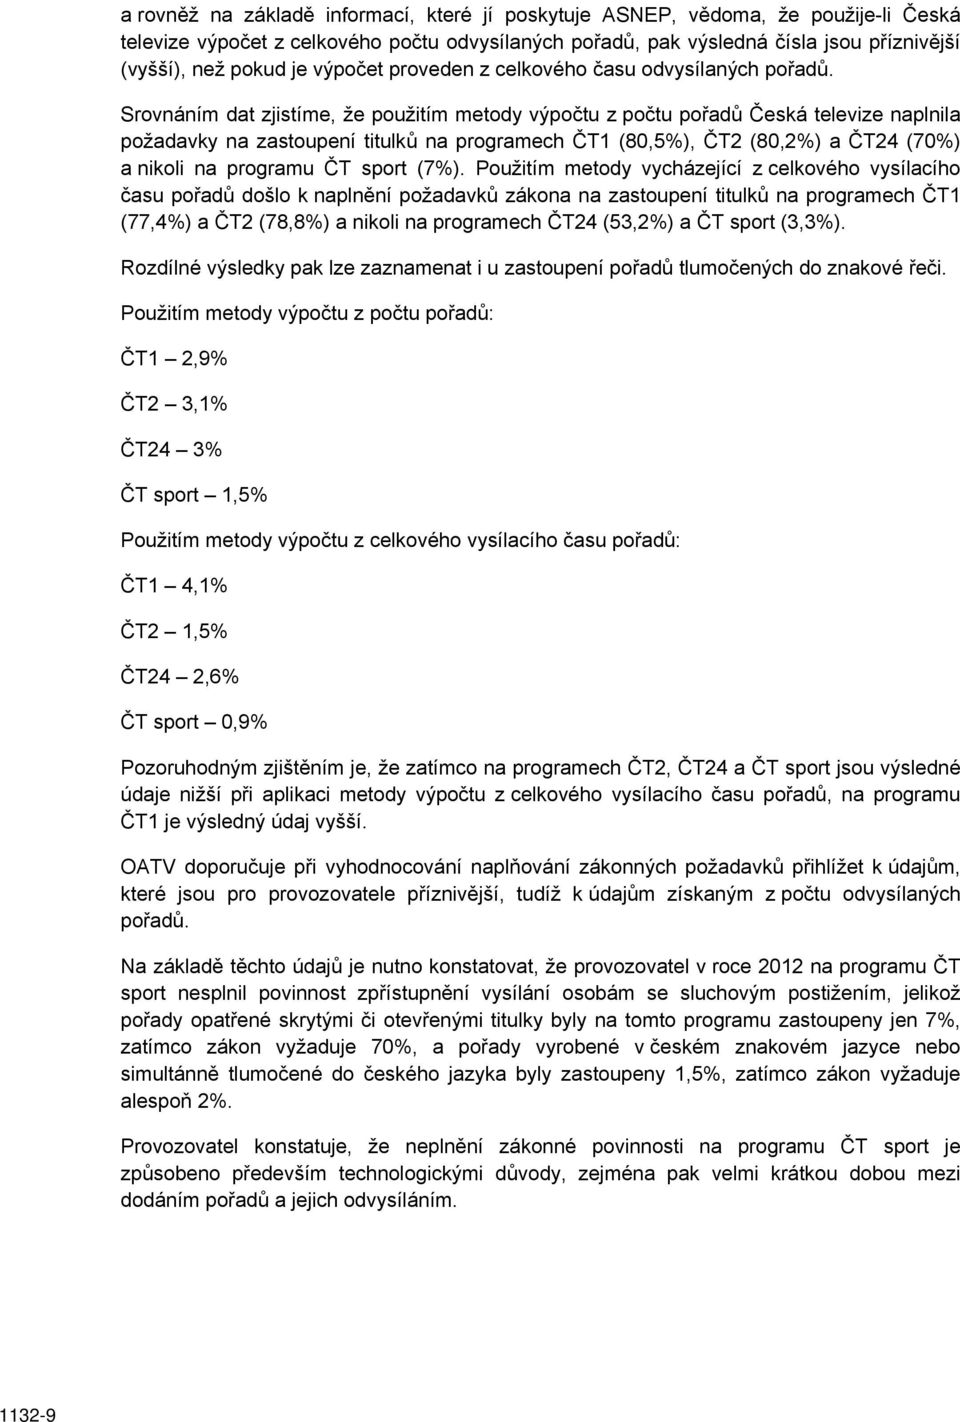 Srovnáním dat zjistíme, že použitím metody výpočtu z počtu pořadů Česká televize naplnila požadavky na zastoupení titulků na programech ČT1 (80,5%), ČT2 (80,2%) a ČT24 (70%) a nikoli na programu ČT